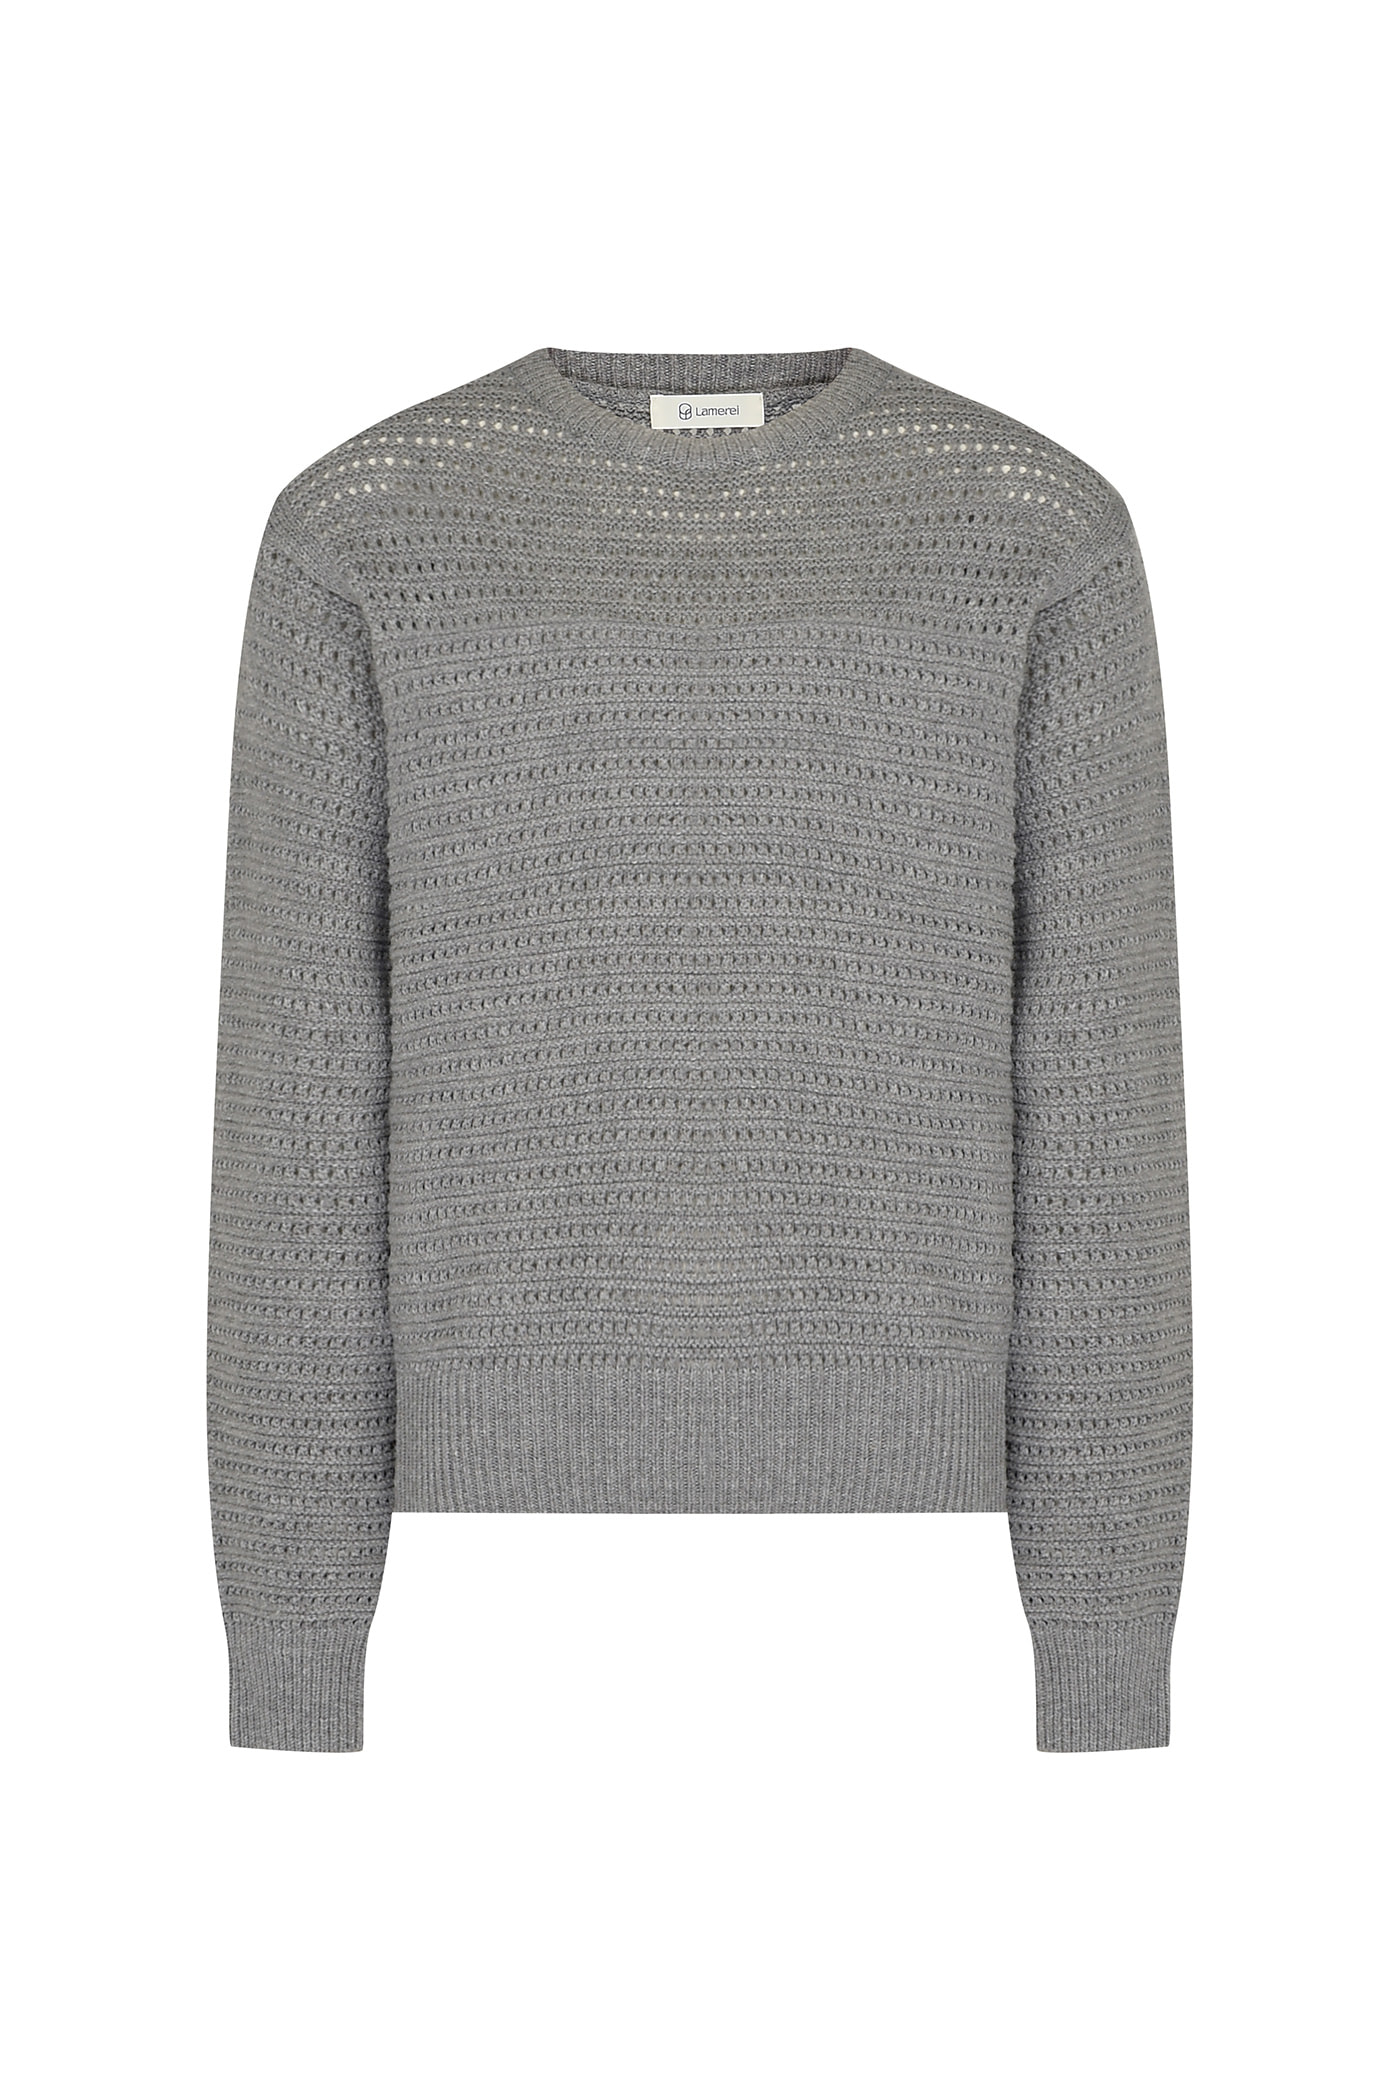 [SAMPLE]Wool Crochet Knit Top[LMBBAUKN129]-Melange Gray